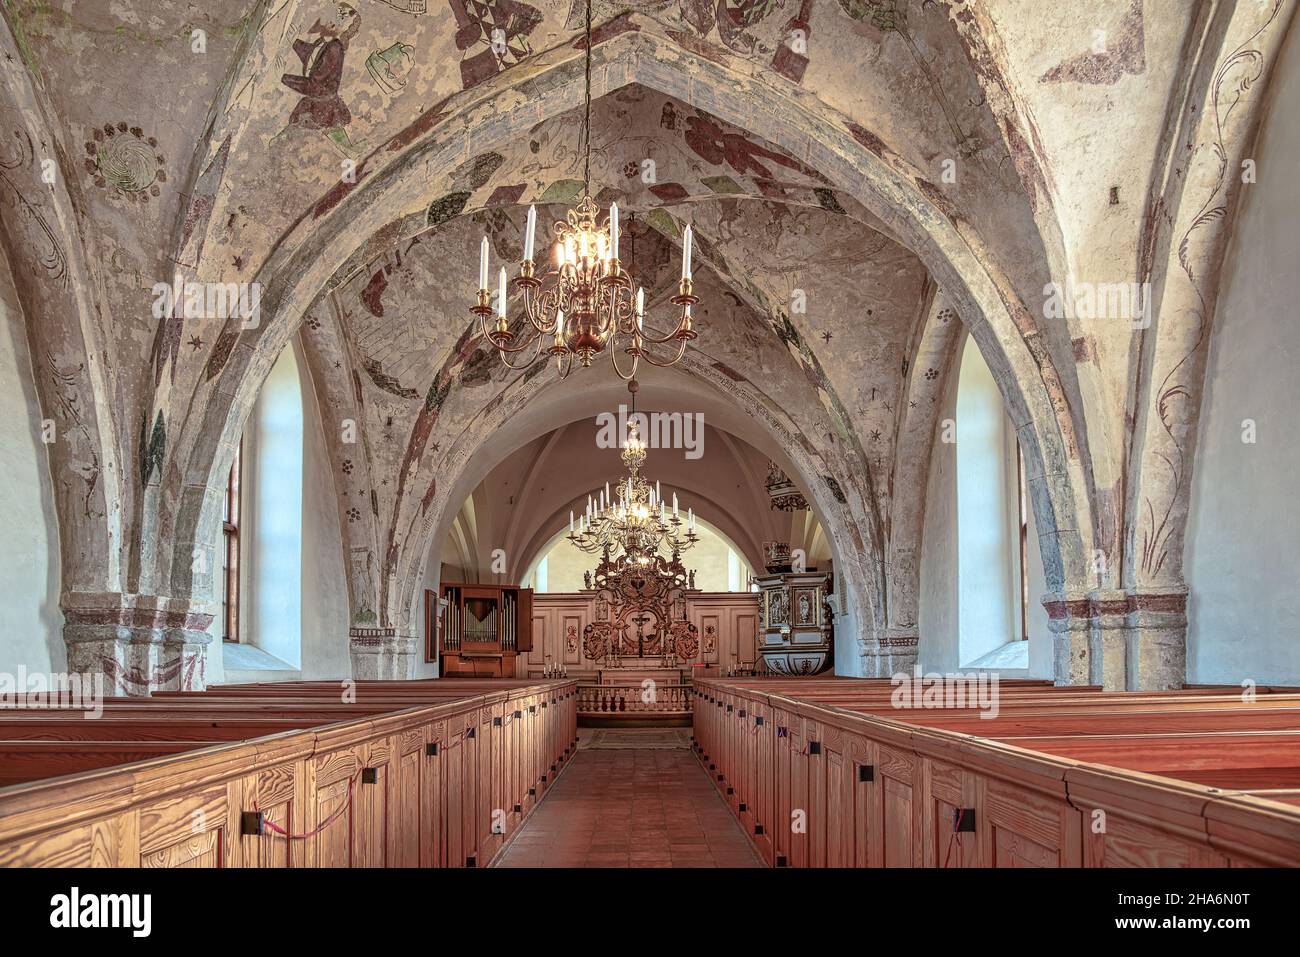 El interior de una iglesia medieval sueca con frescos góticos, Bollerup, Suecia, 15 de septiembre de 2021 Foto de stock